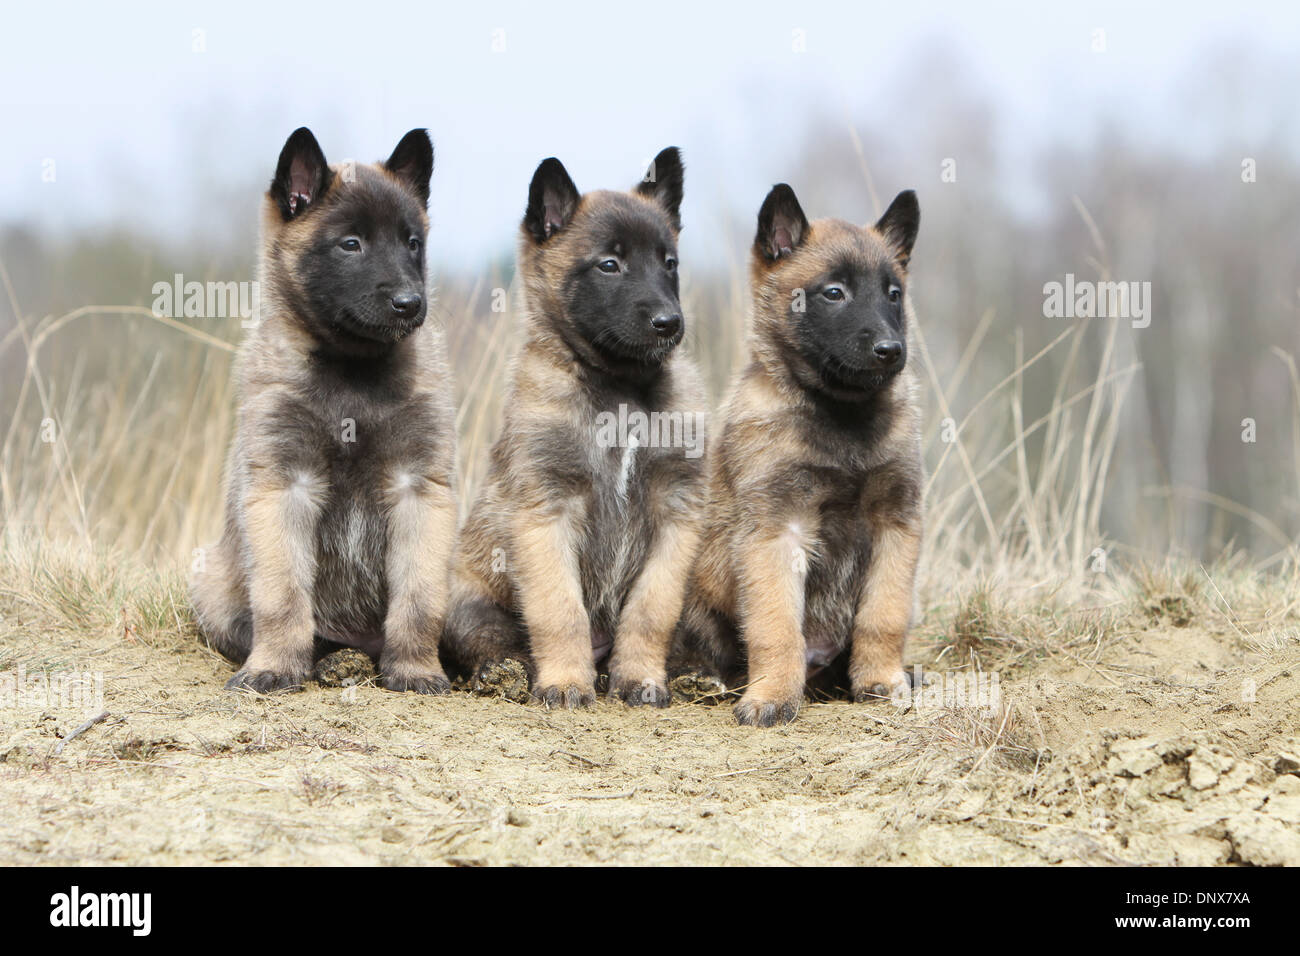 Belgischer Schäferhund Malinois drei Welpen sitzen in Dünen Hund  Stockfotografie - Alamy